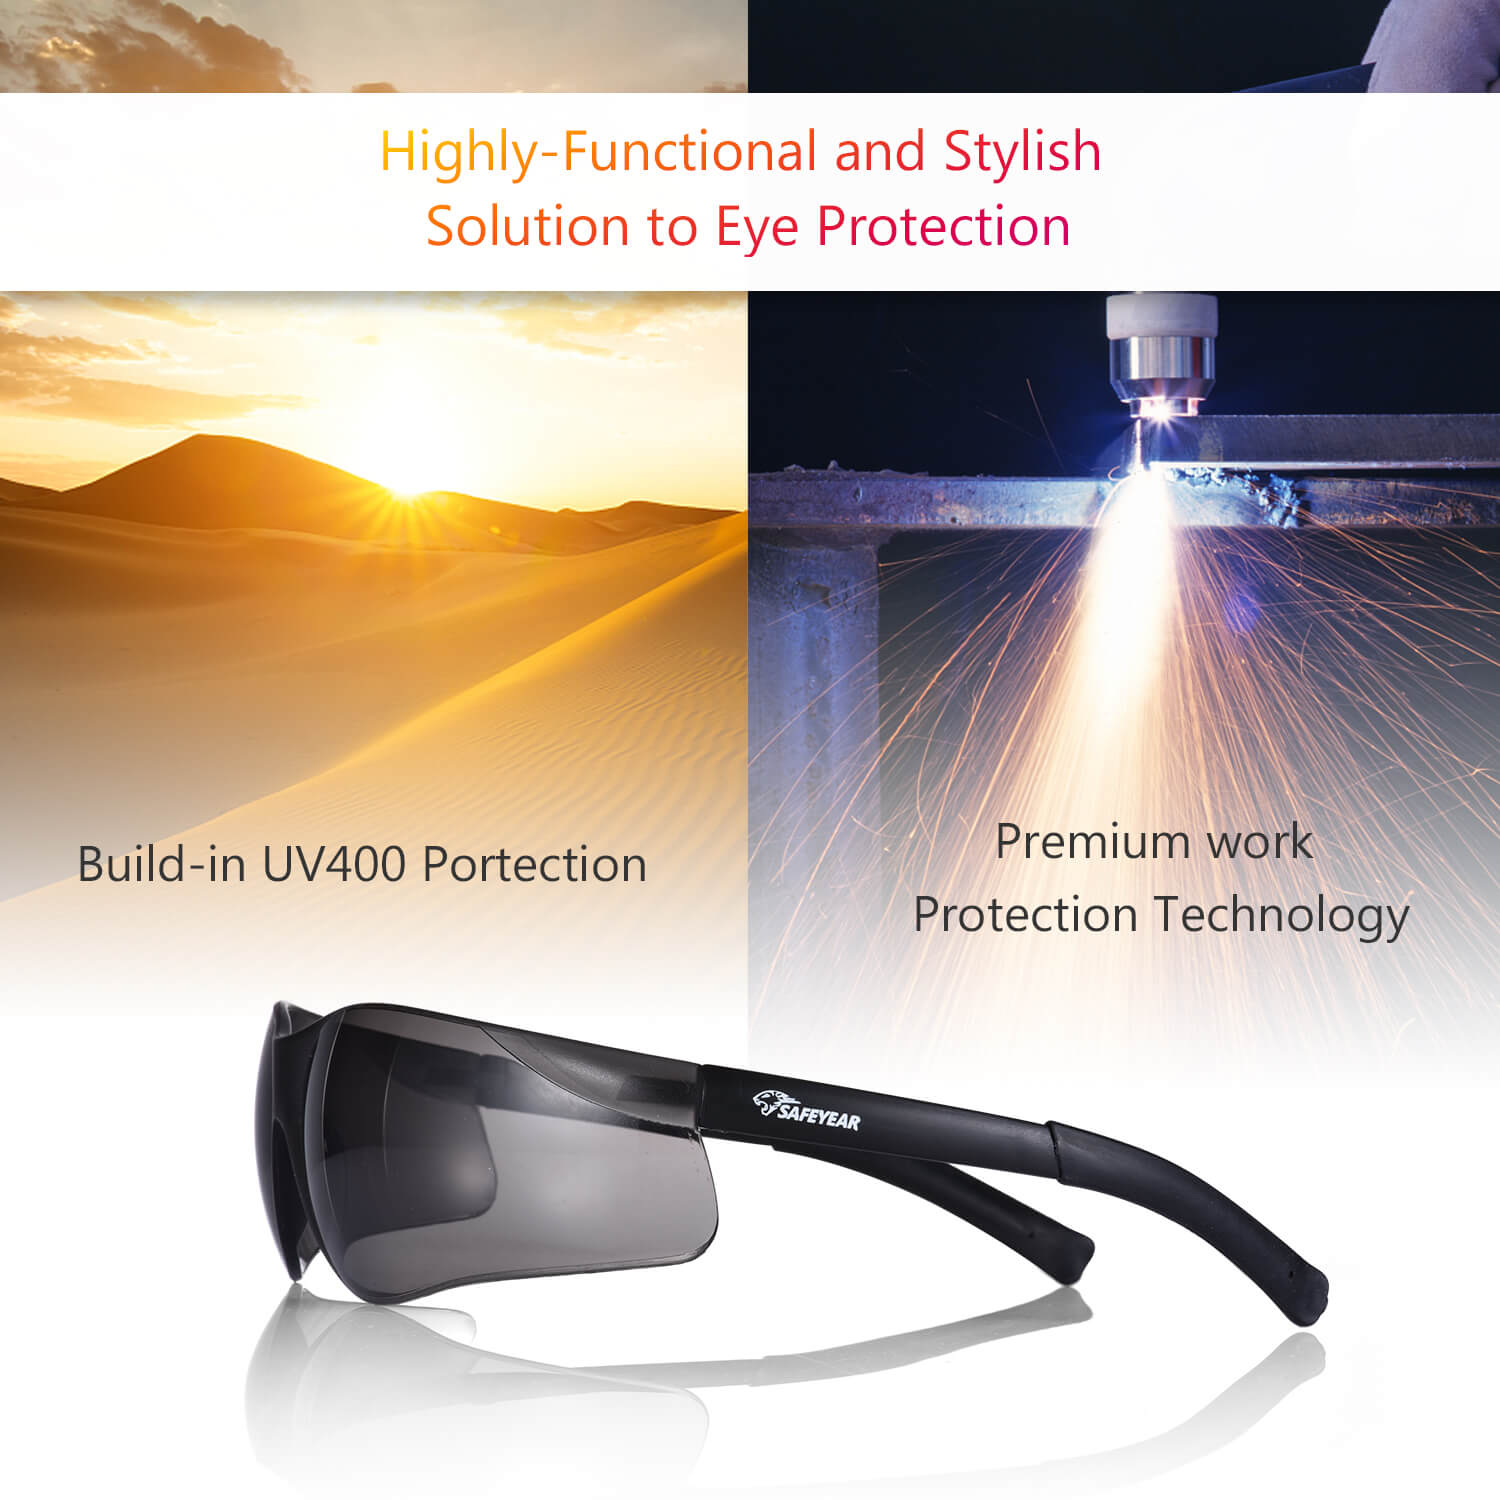 Safeyear 【12 Paar】 Schwarz getönte Schutzbrille mit dunklen Gläsern für Männer und Frauen